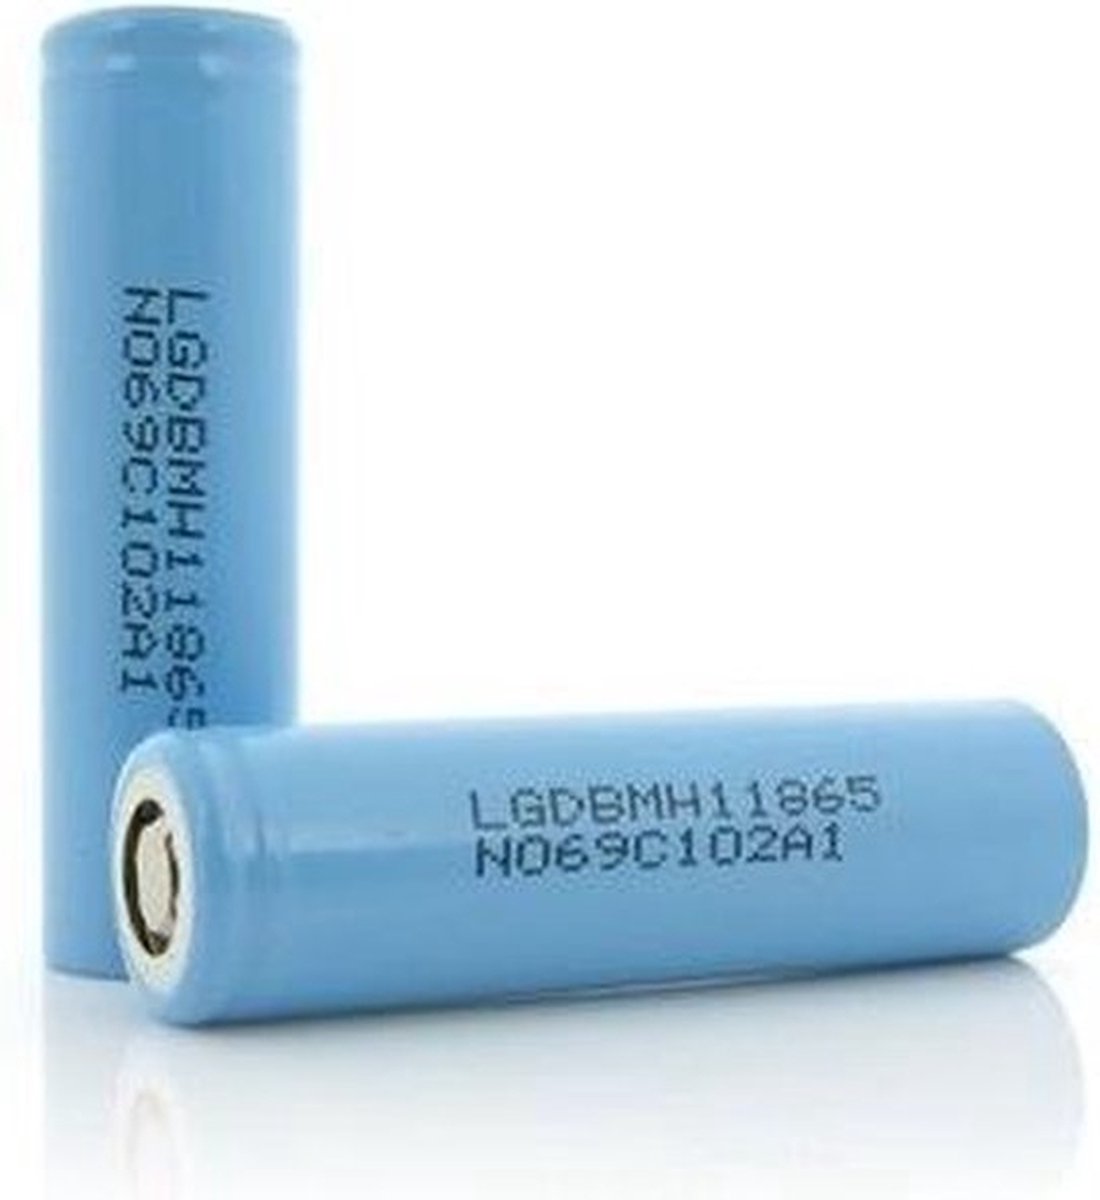 LG HGL2 - 18650 batterij - 35A -3000mAh - 3.7V